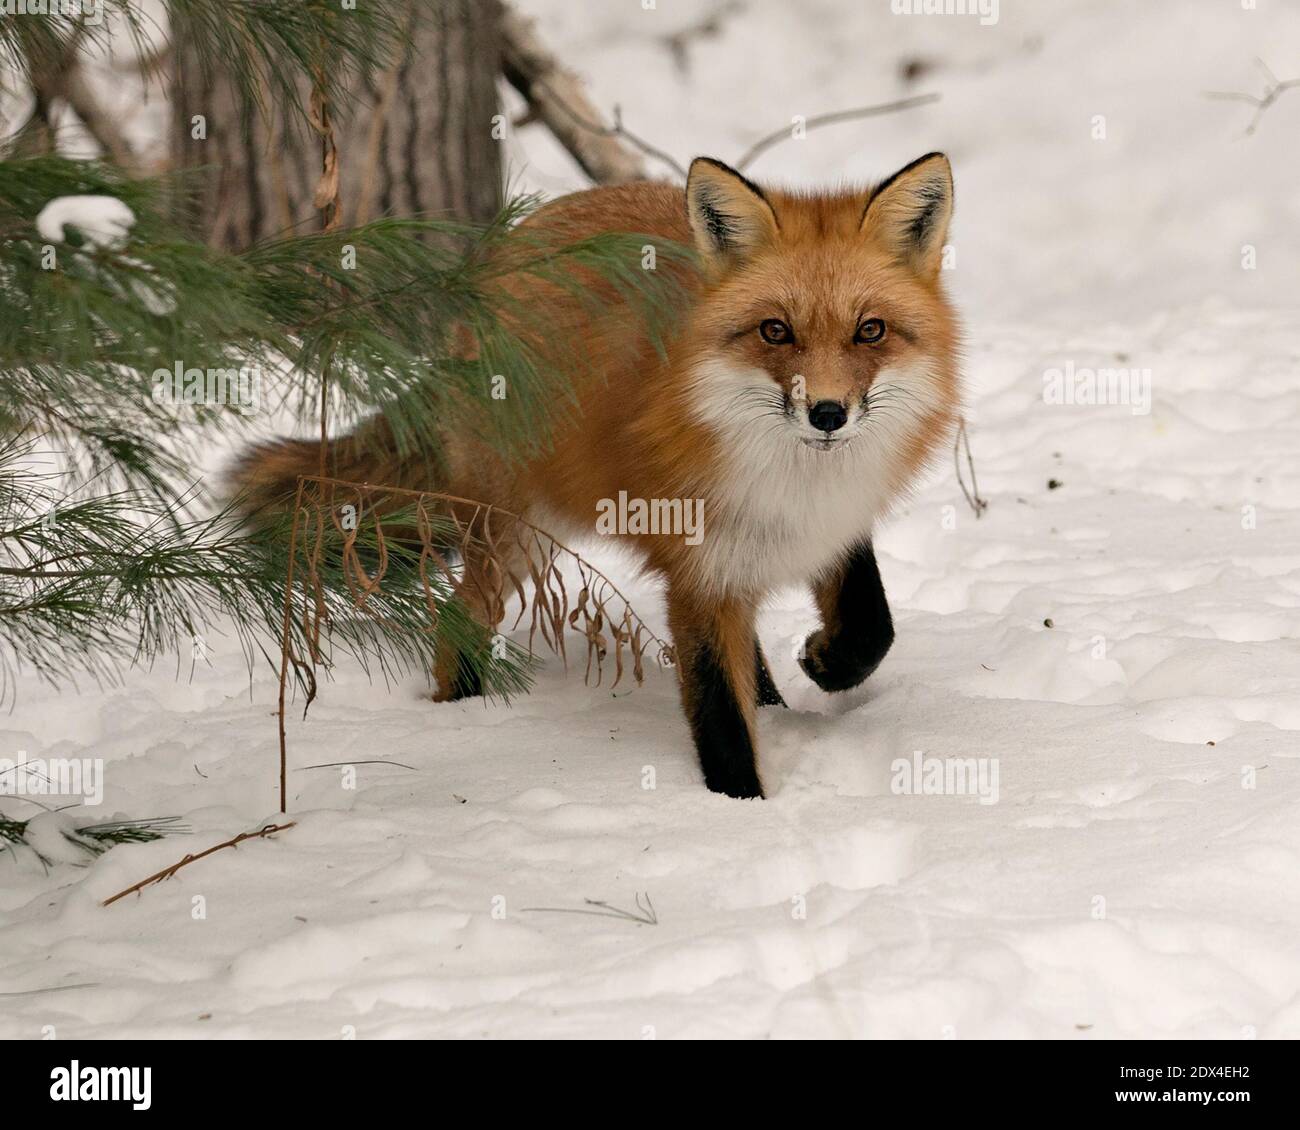 Vue en gros plan du renard roux en hiver dans son environnement avec neige et arrière-plan d'arbre affichant une queue de renard broussaillée, fourrure. Fox image. Banque D'Images